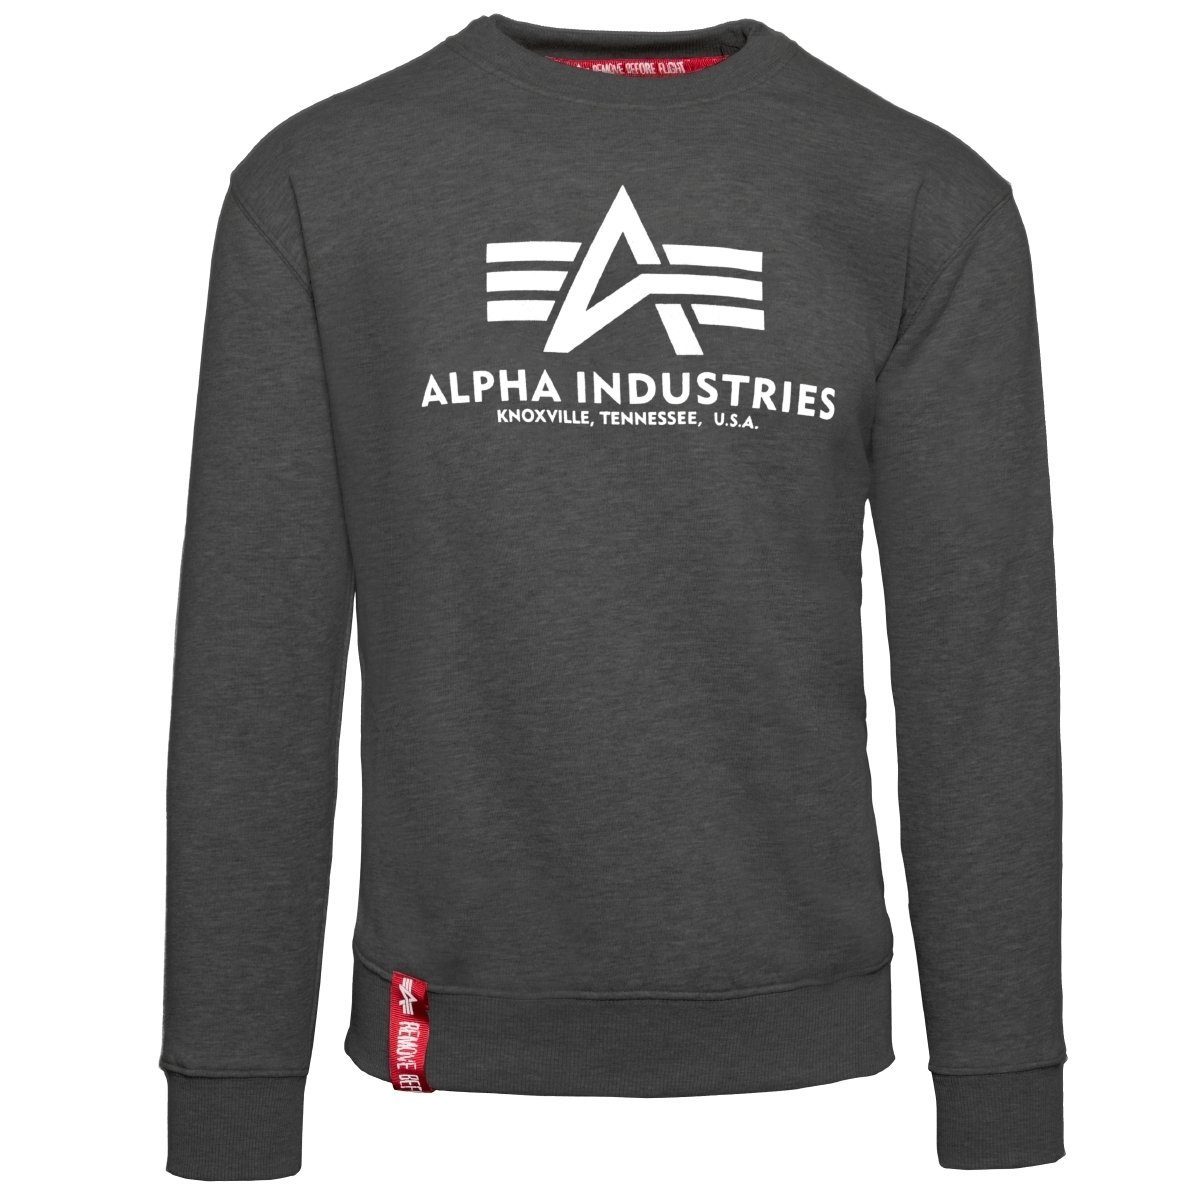 Informationen zu Rabatten im Versandhandel Alpha Industries Herren Sweater Sweatshirt Basic grau